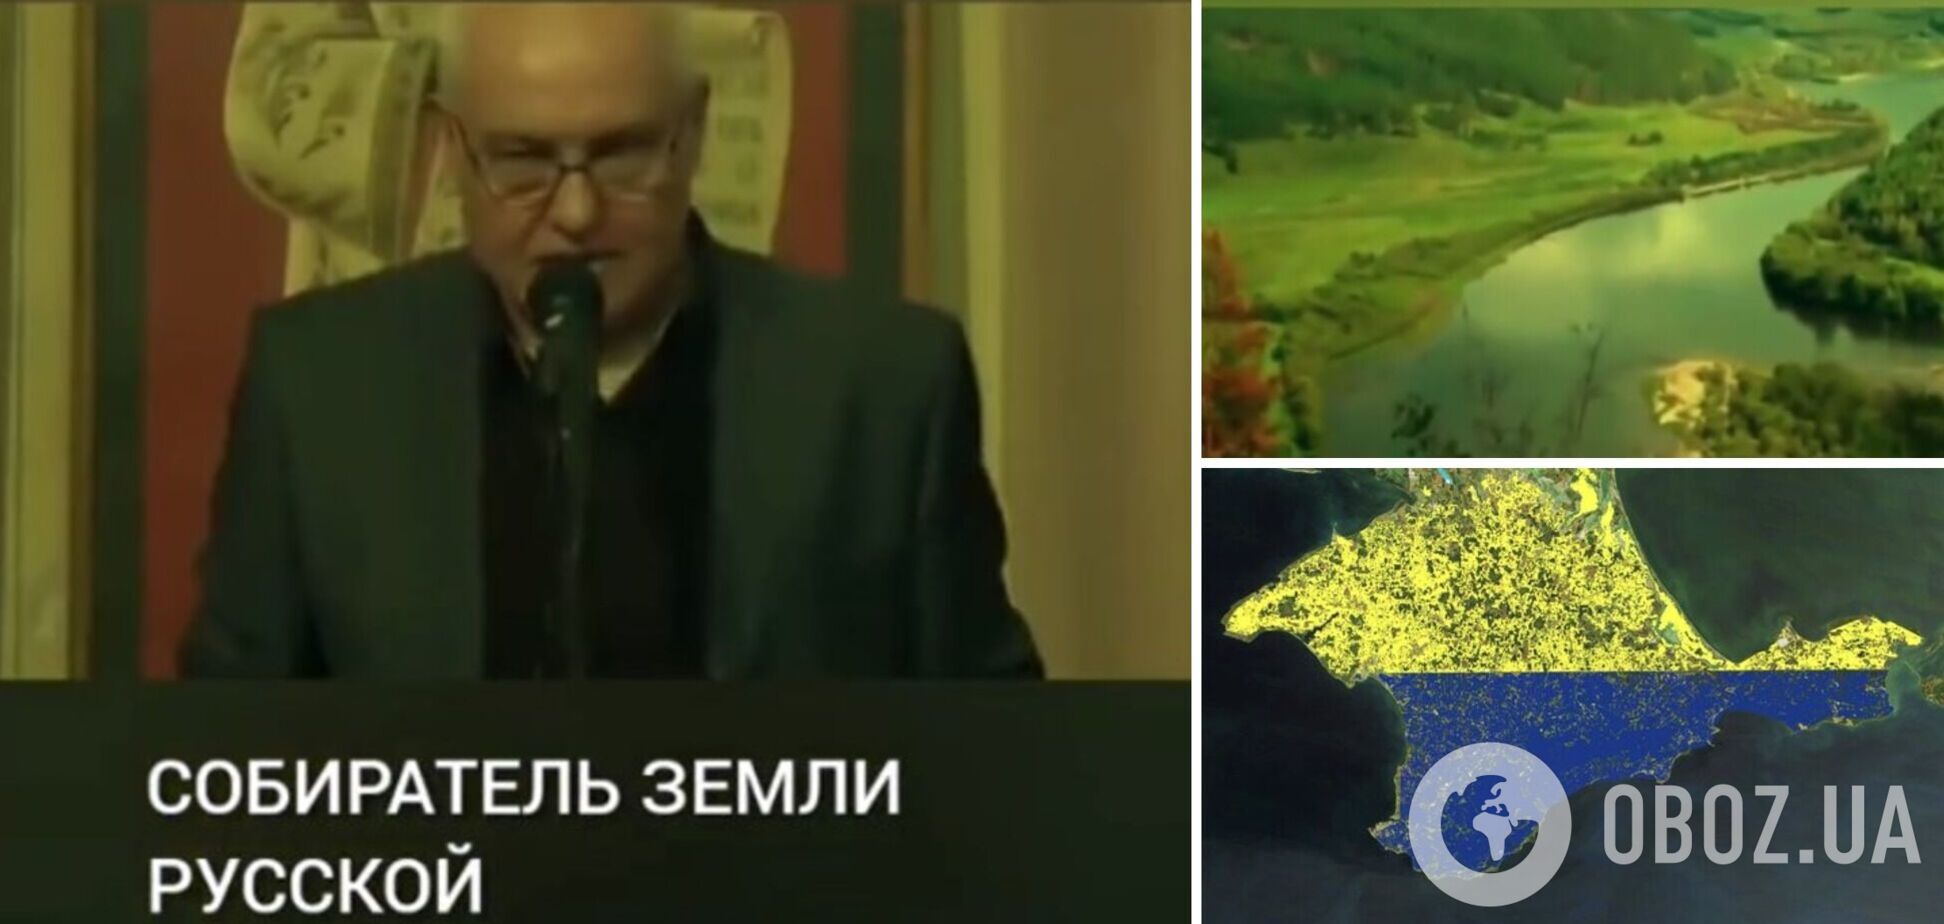 Путін вихваляється 'привласненням' Криму, а сам здає російські землі Китаю: відео з викриттям розбурхало мережу